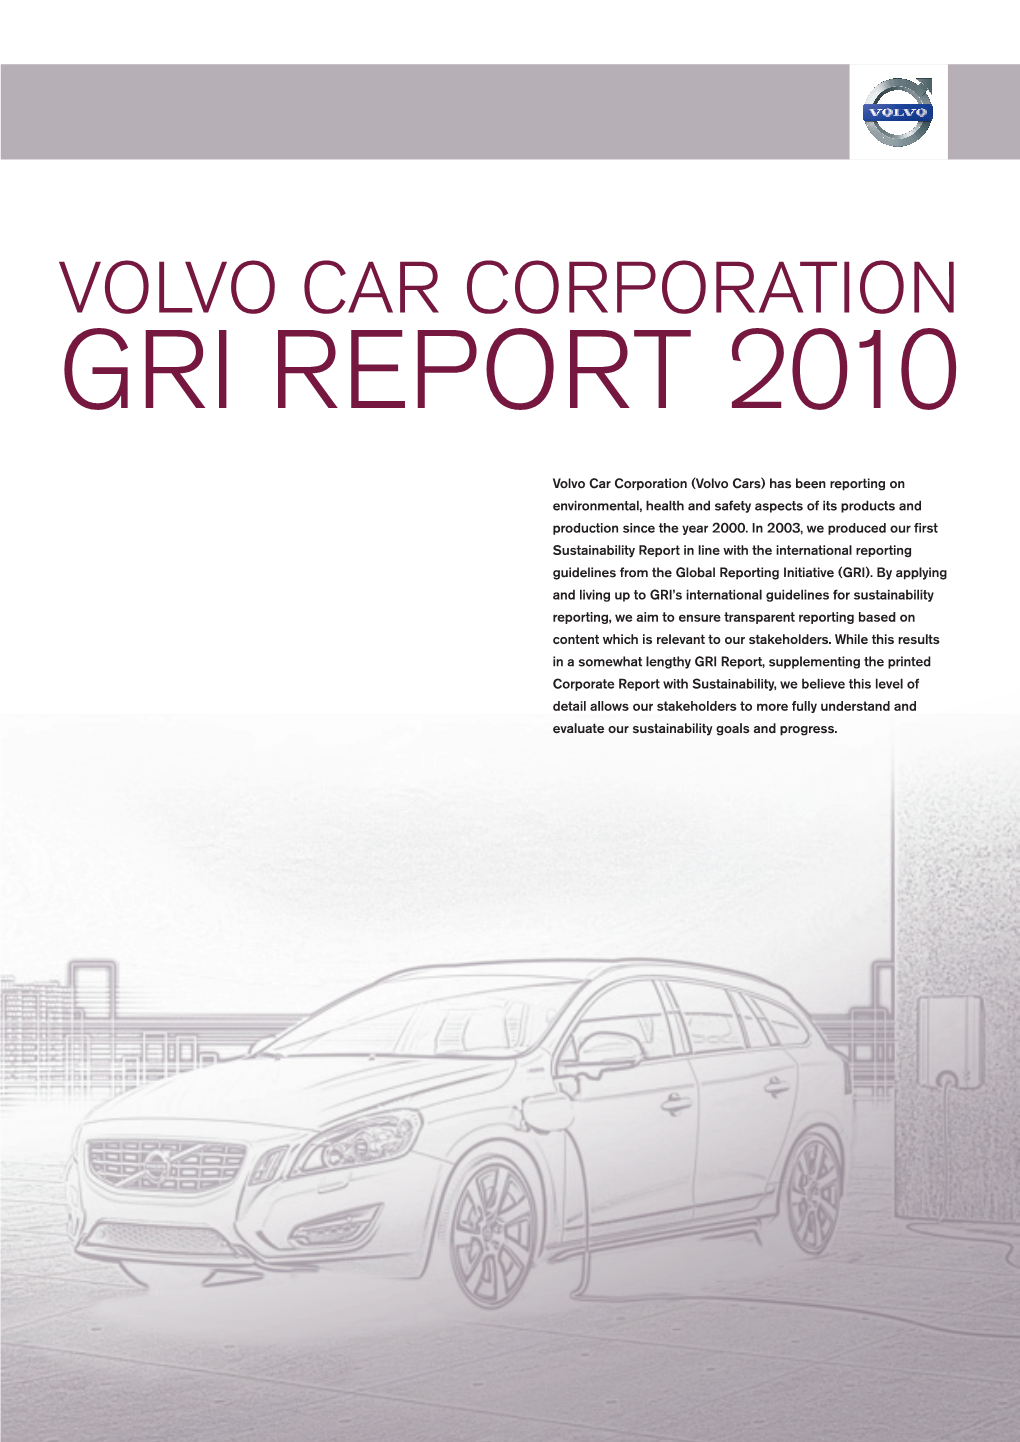 Gri Report 2010